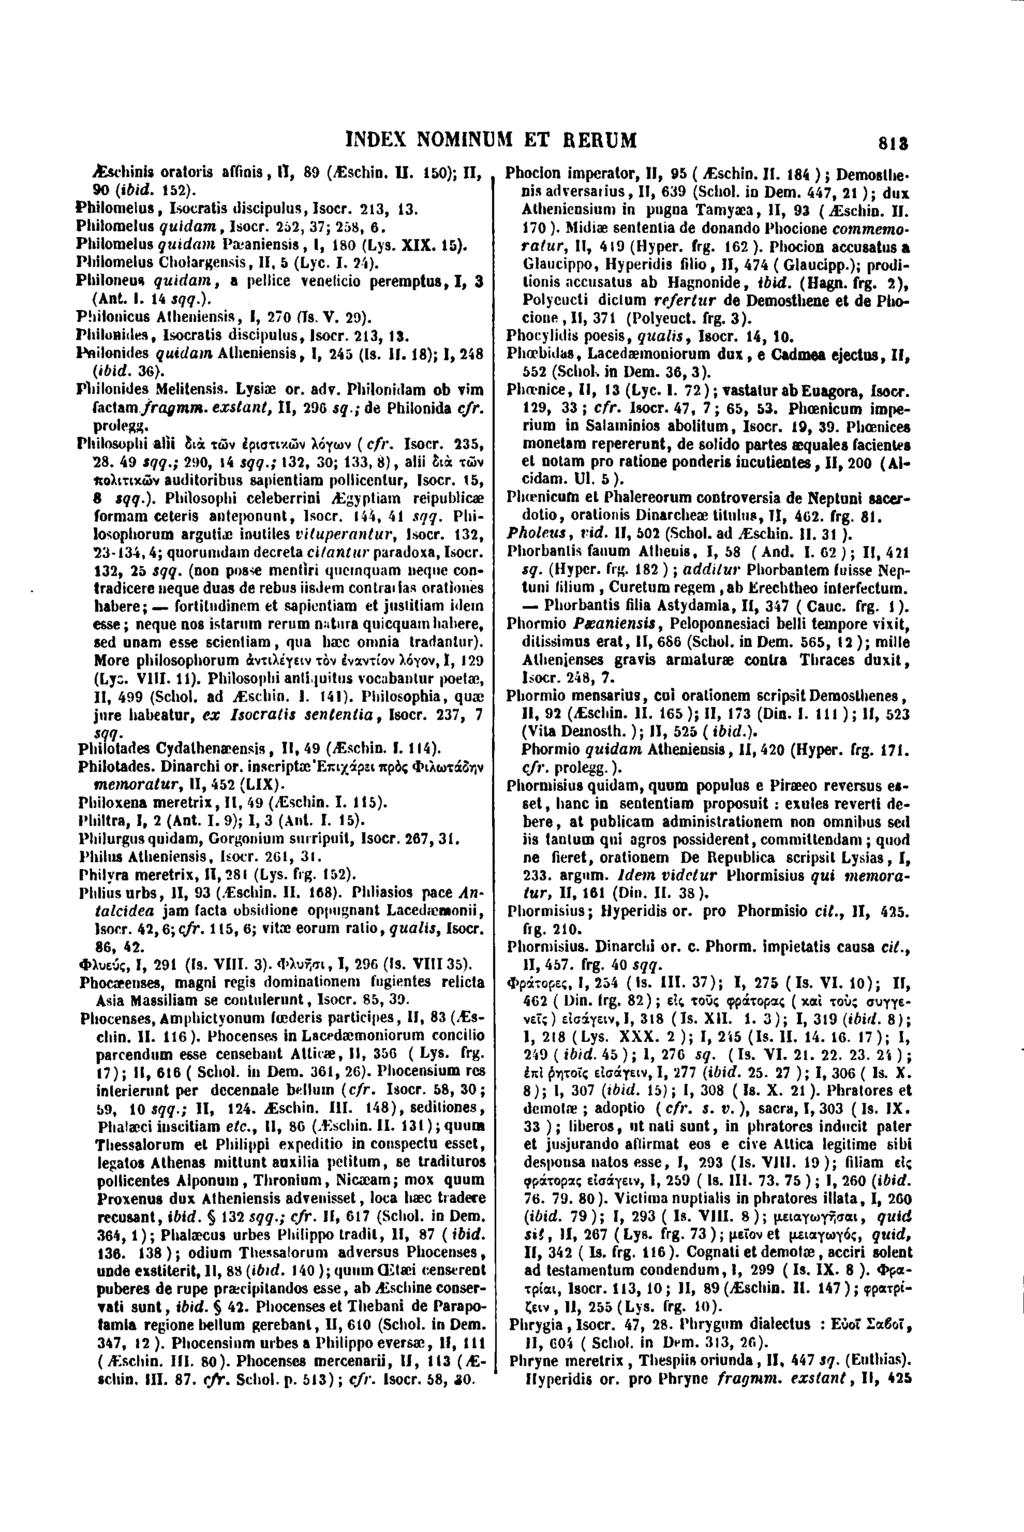 Æschinis oratoris affinis, II, 89 (Æschin. Il. 150); II, 90 (ibid. 152). Philomelus, Isocralis discipulus, Isocr. 213, 13. Philomelus quidam, lsocr. 252, 37; 258, 6.